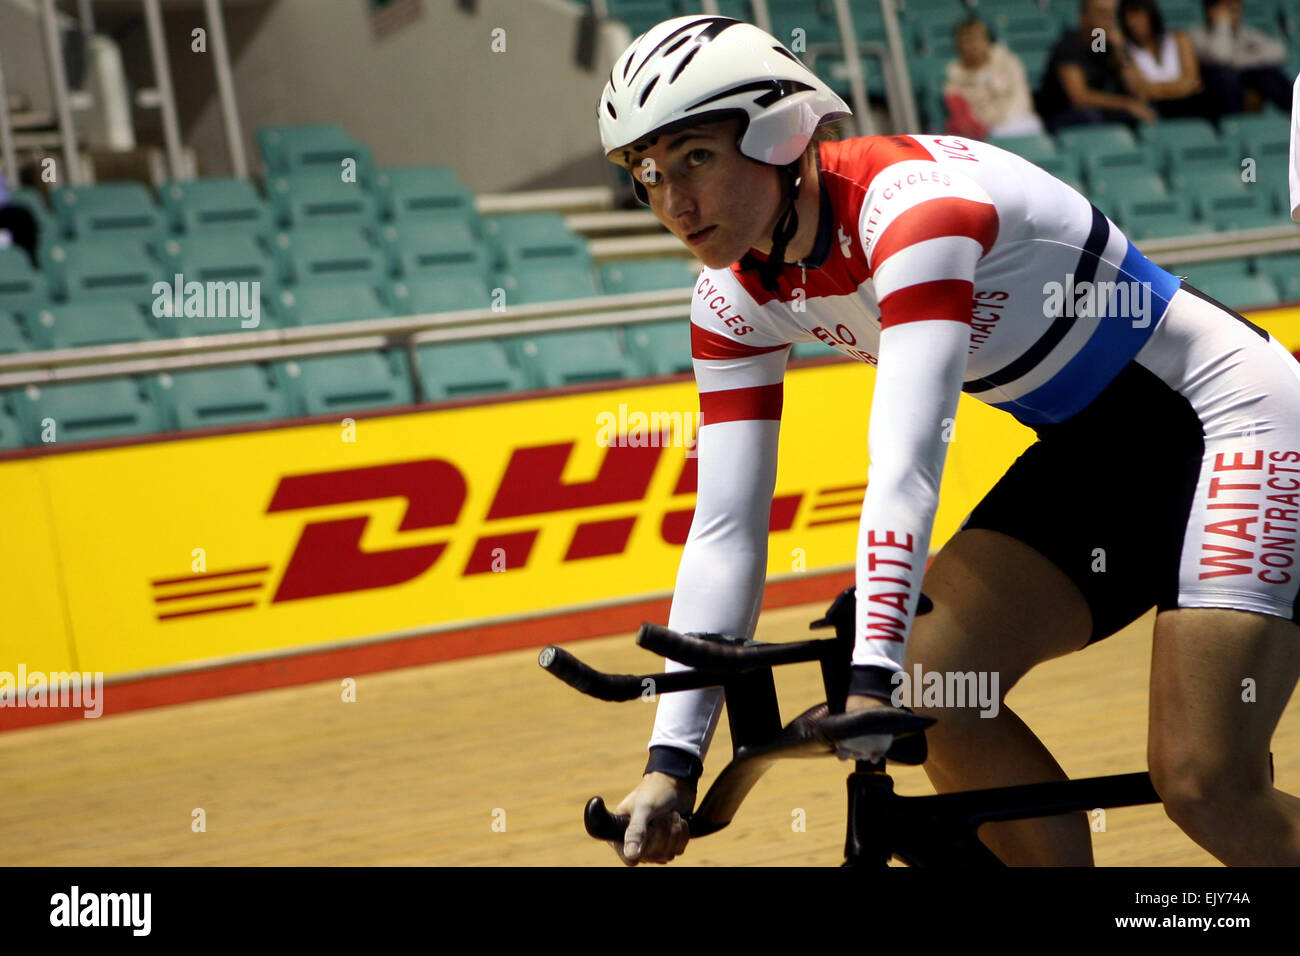 Doble medallista de oro paralímpico Sarah Storey en el Velódromo de Manchester. Imagen: Chris Bull Foto de stock